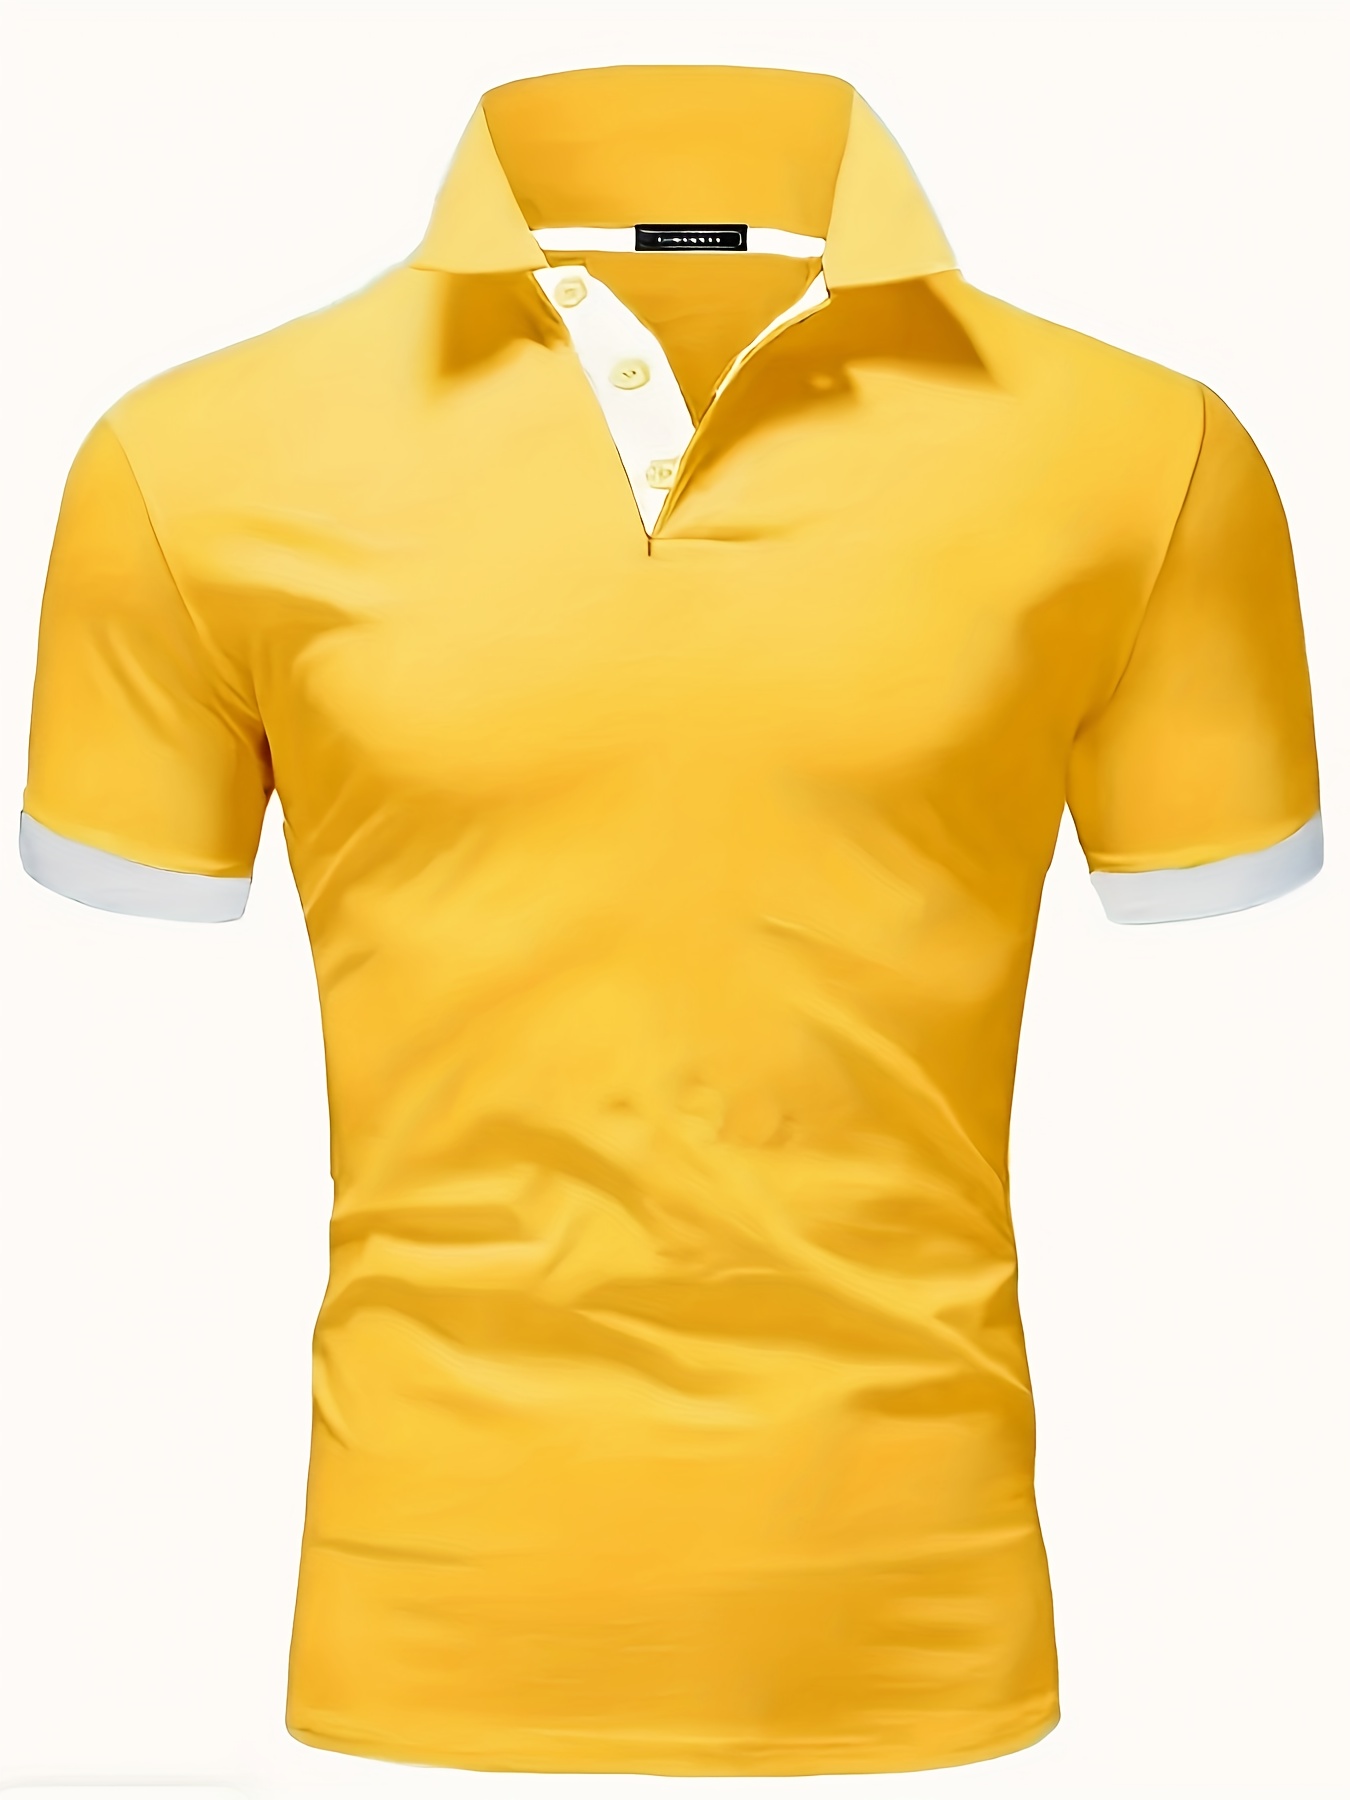 Yellow Shirts - Temu